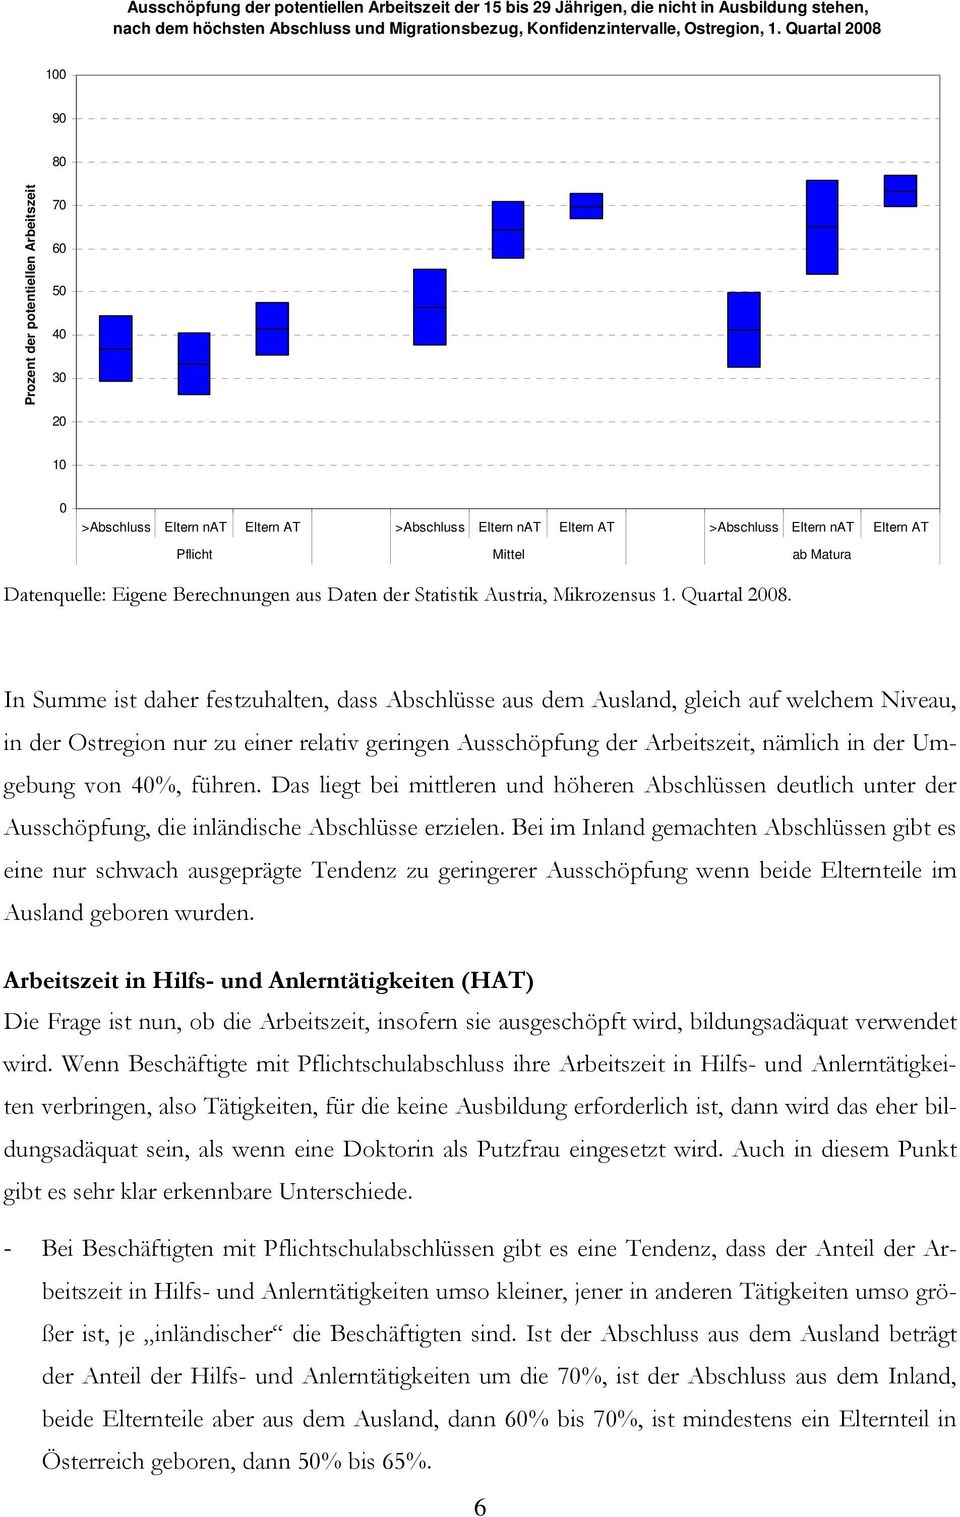 Matura Datenquelle: Eigene Berechnungen aus Daten der Statistik Austria, Mikrozensus 1. Quartal 2008.